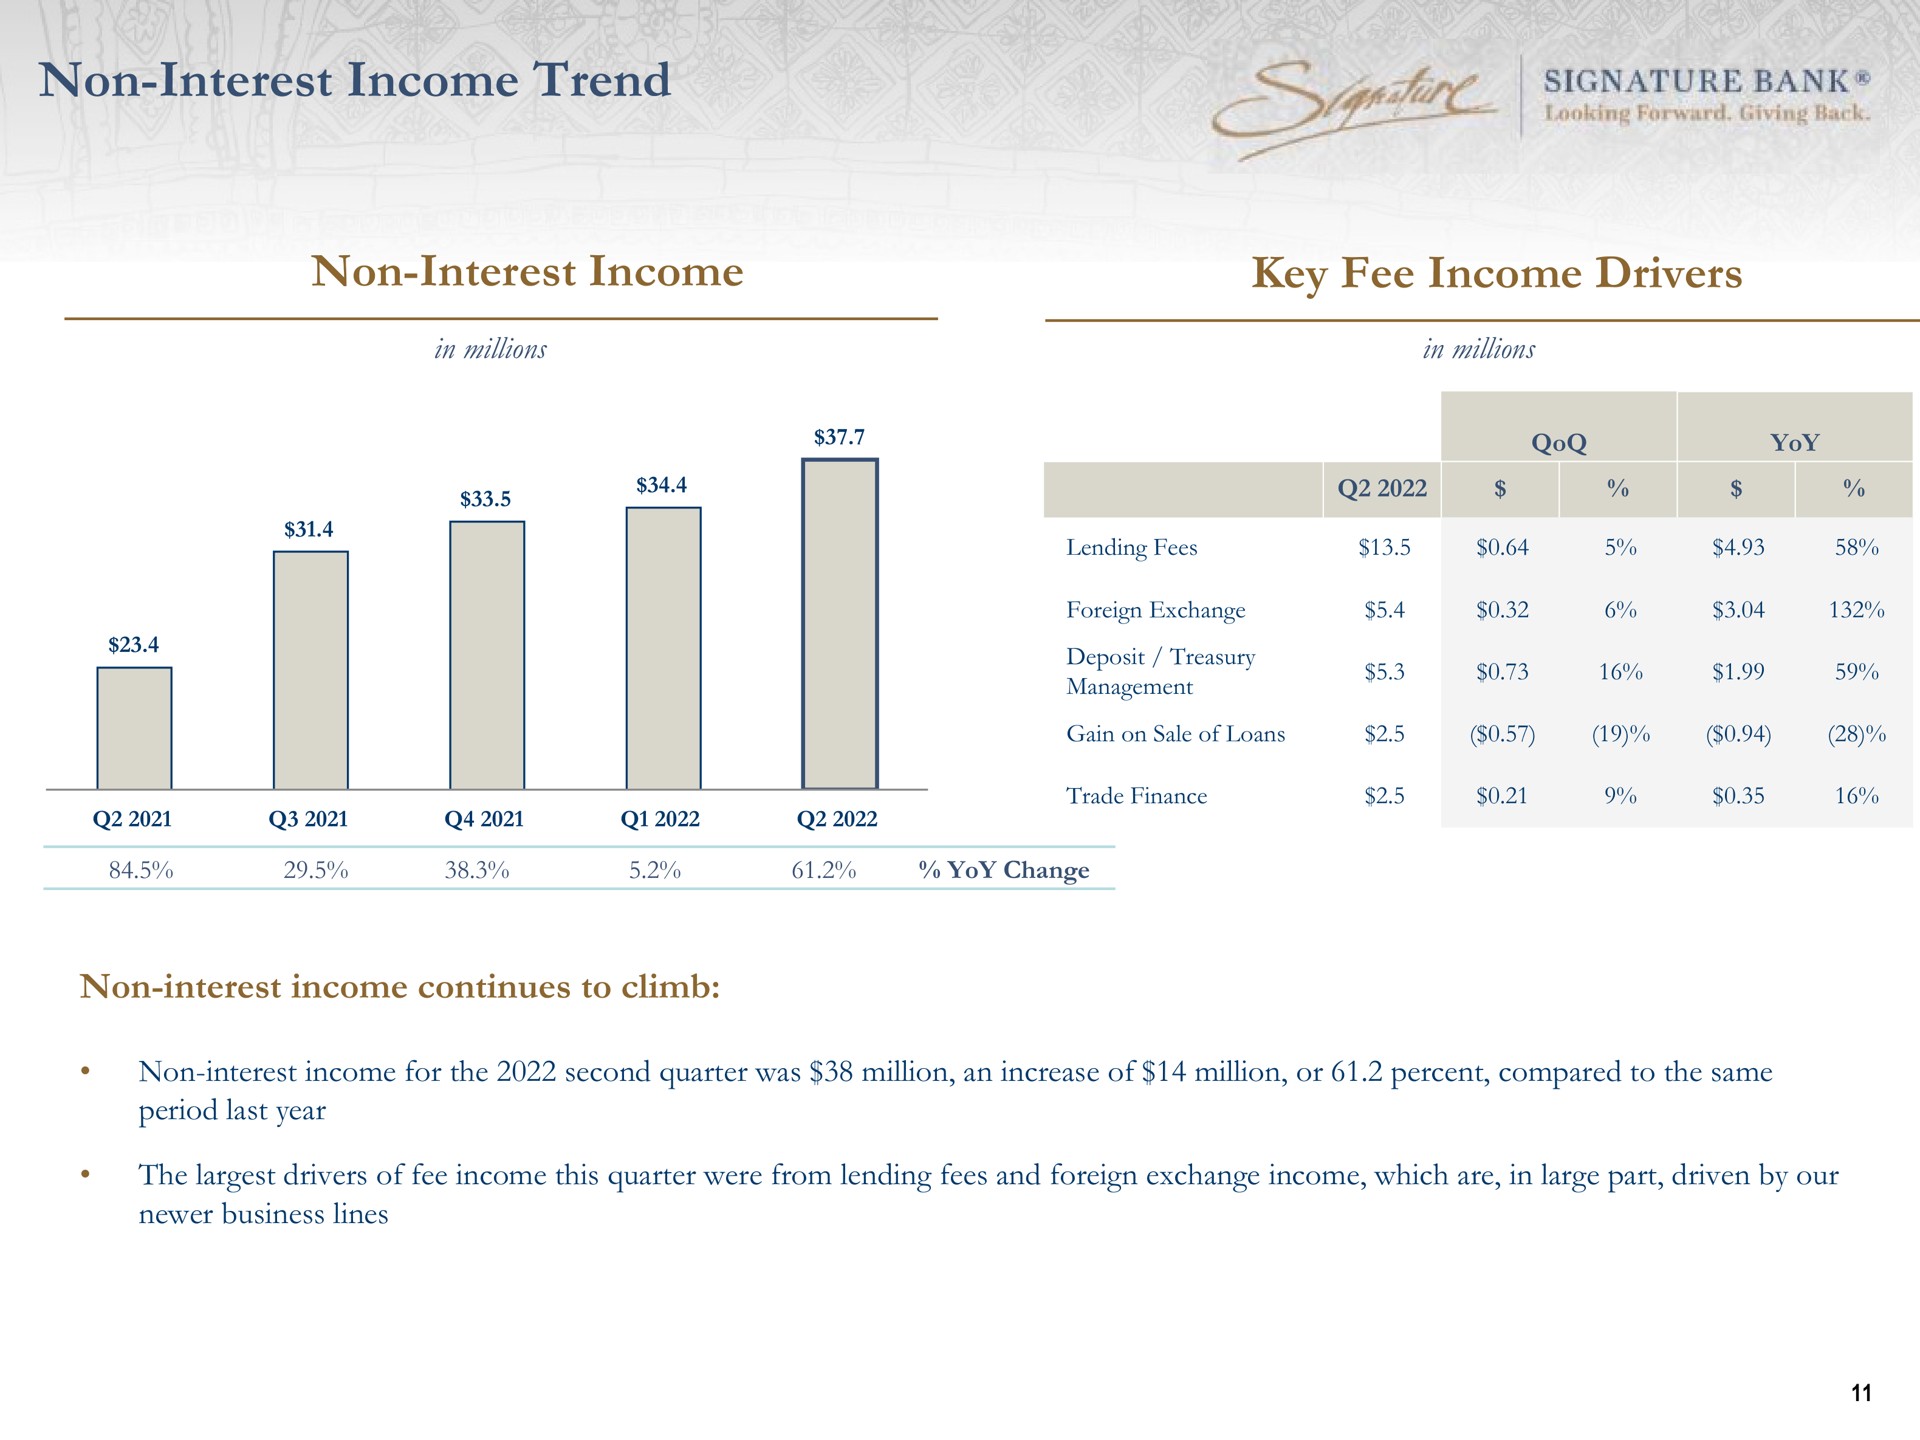 non interest income trend non interest income key fee income drivers signature bank | Signature Bank